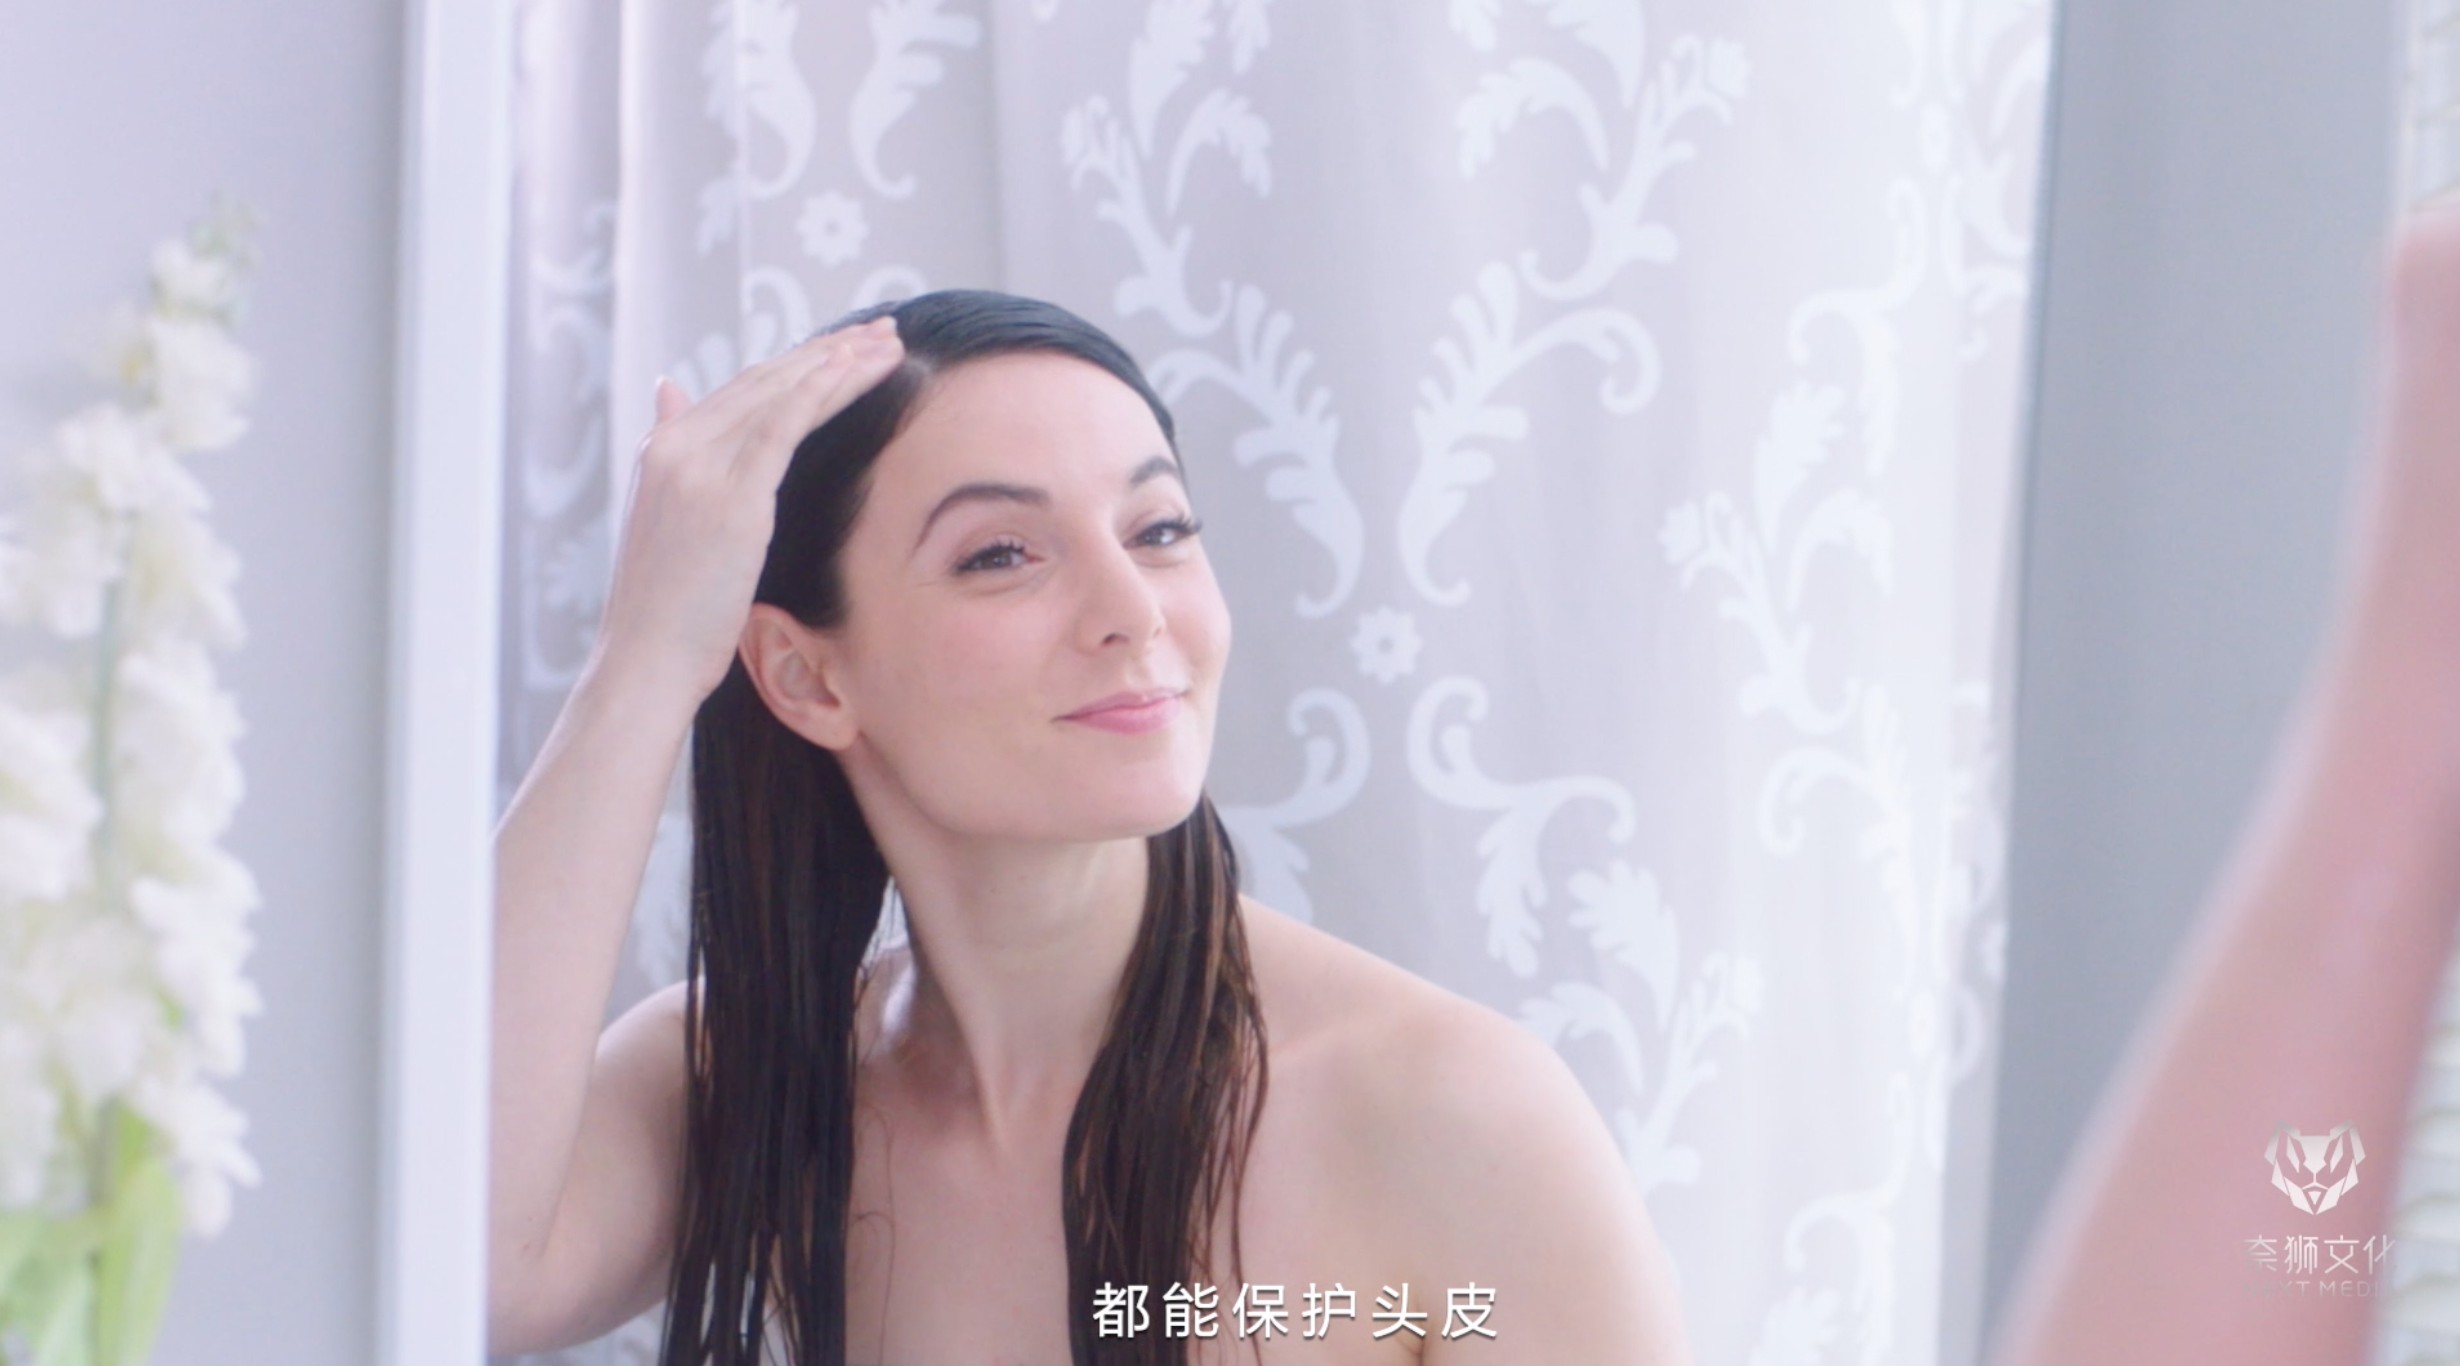 海飞丝丨 Free to choose any shampoo 